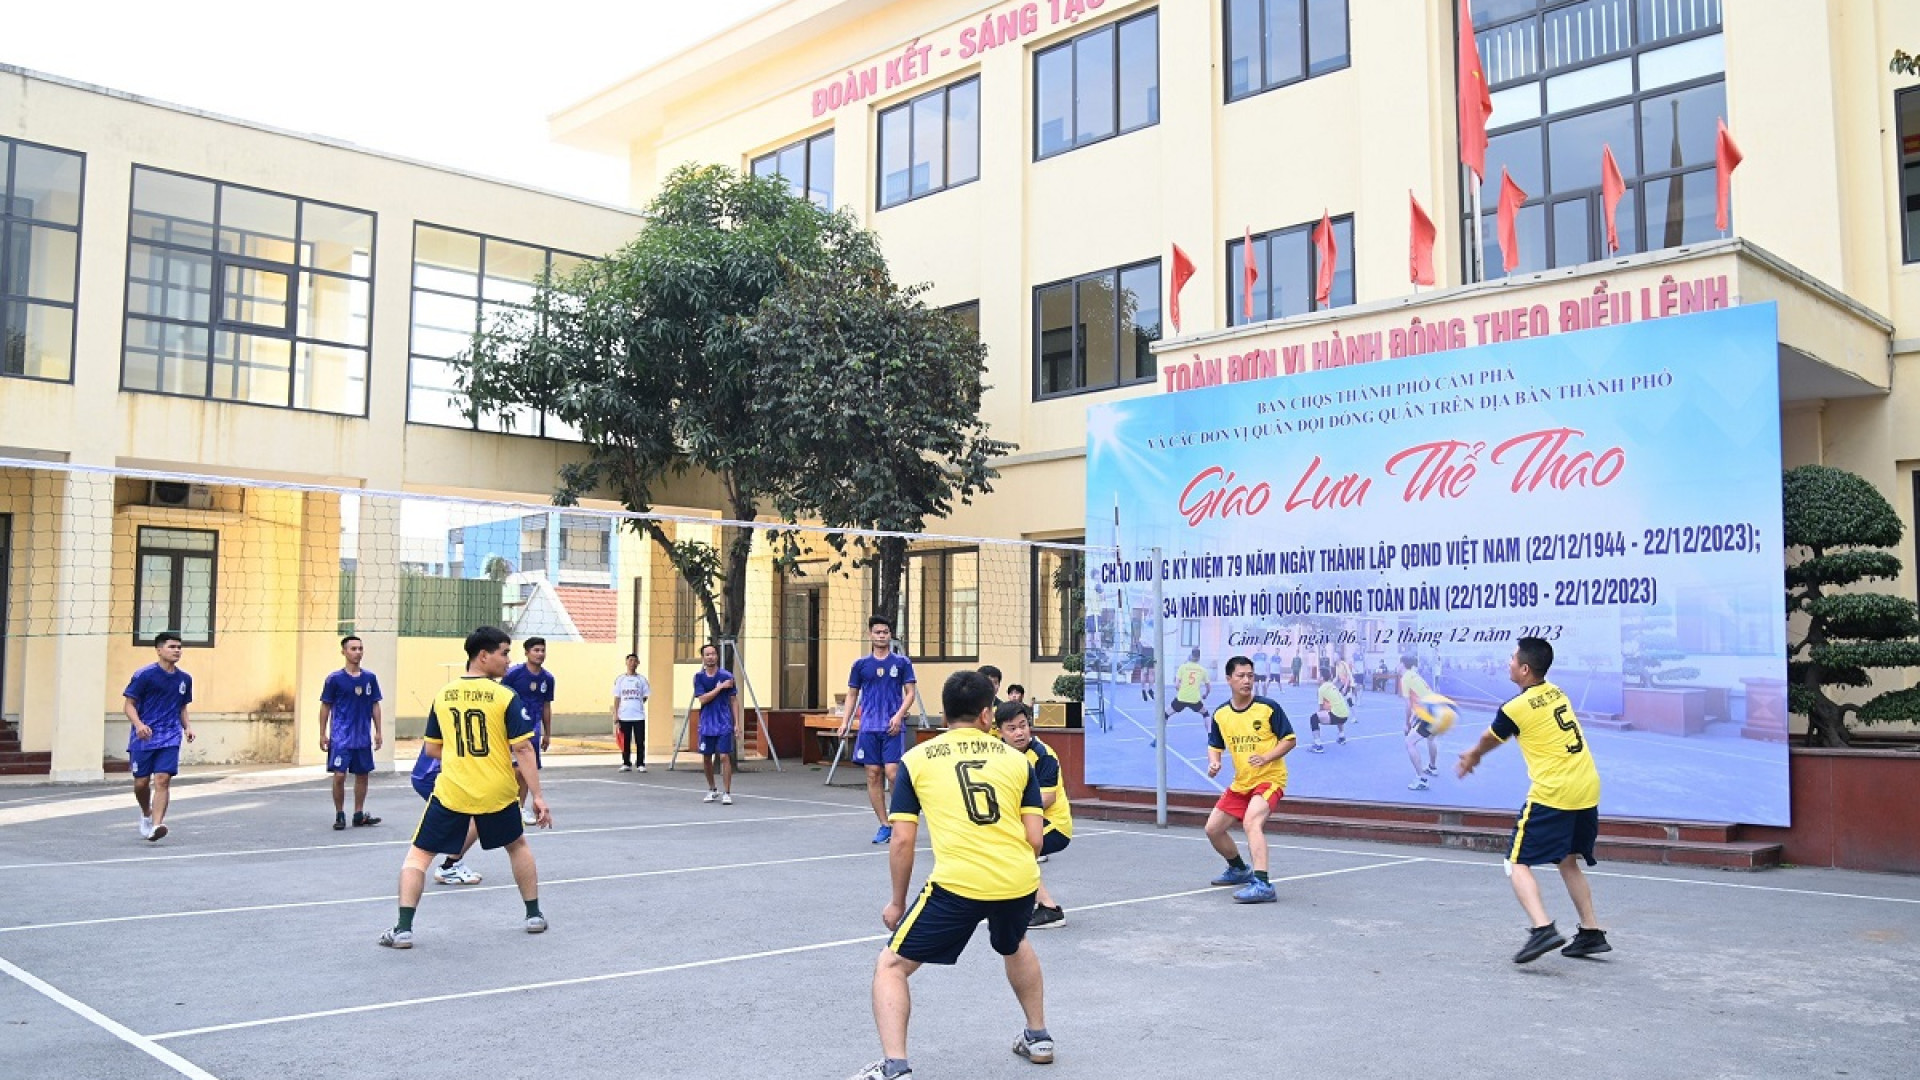 Ban CHQS thành phố Cẩm Phả (Quảng Ninh) giao lưu thể thao với các đơn vị quân đội đứng chân trên địa bàn